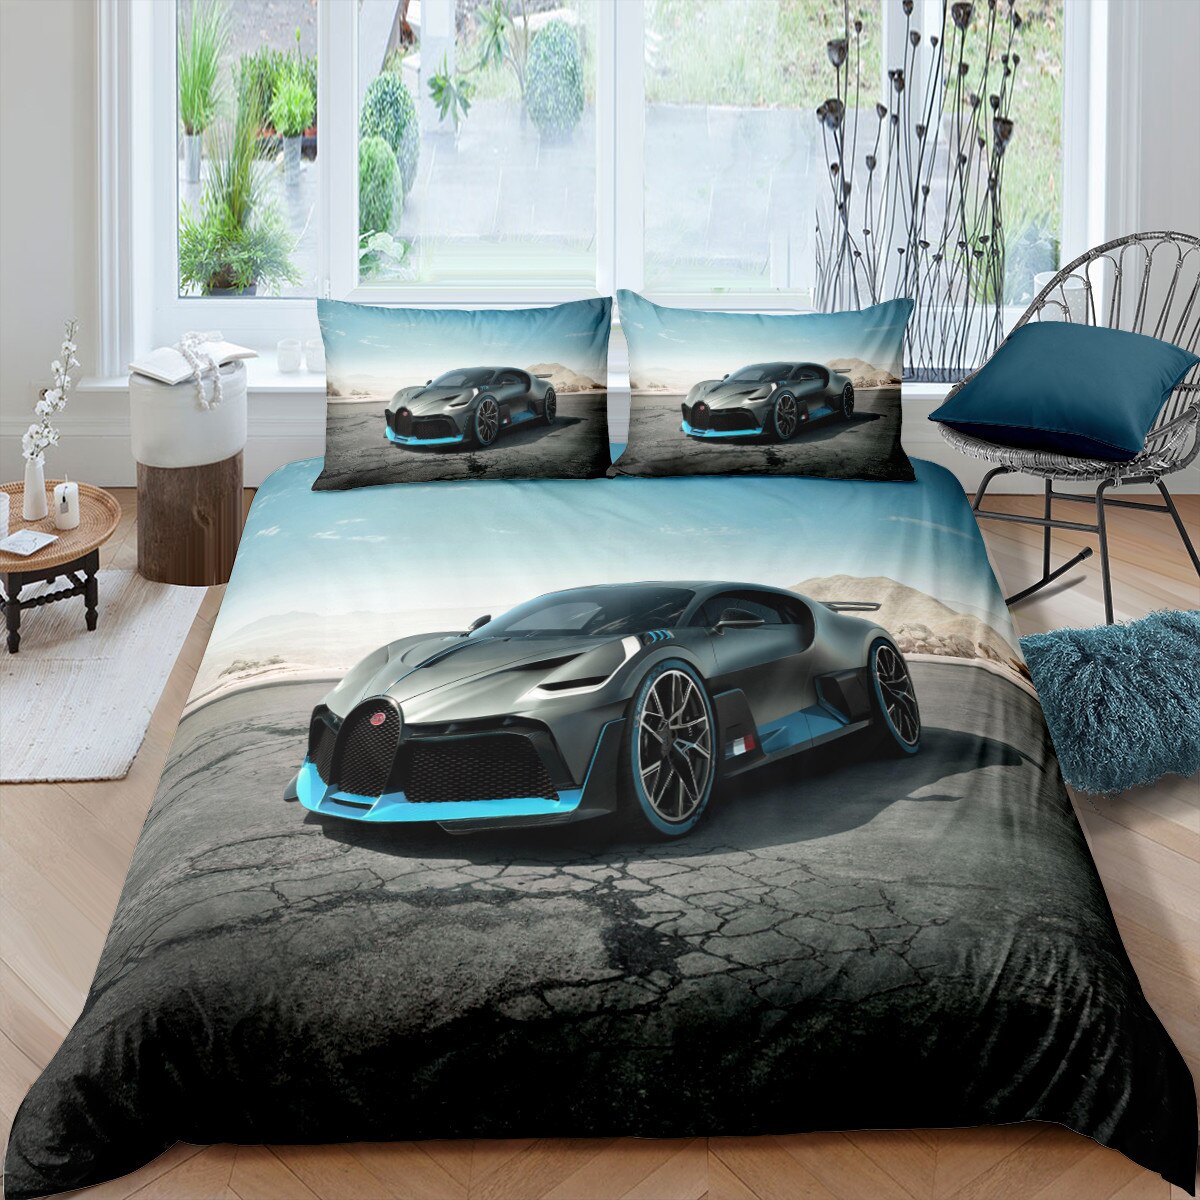 Bettbezug für Luxusautos von Bugatti